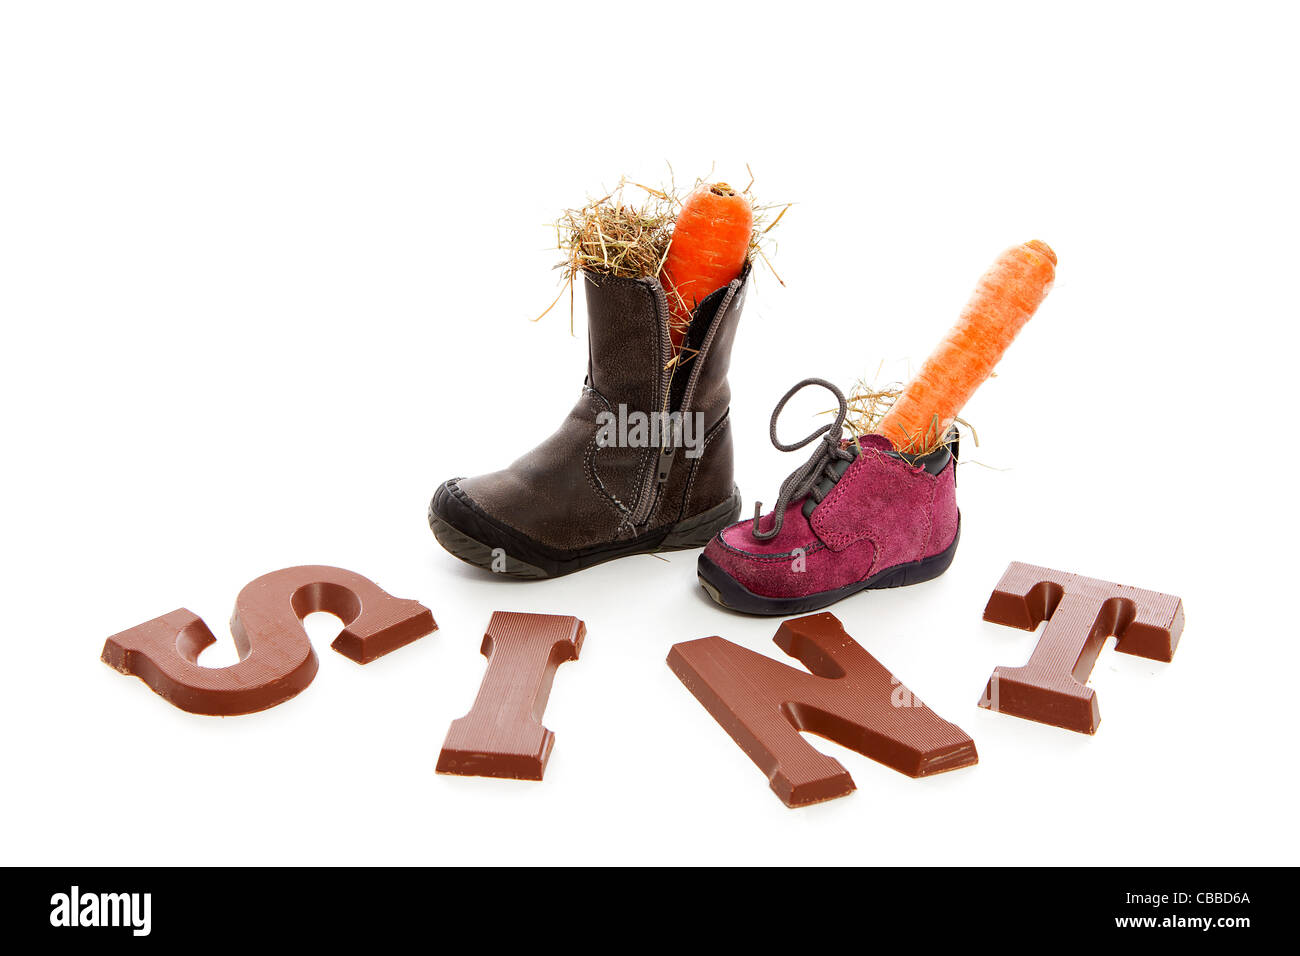 Sinterklaas, typisch holländischen Veranstaltung mit Schokolade Buchstaben und Karotte in Schuhen auf weißem Hintergrund Stockfoto